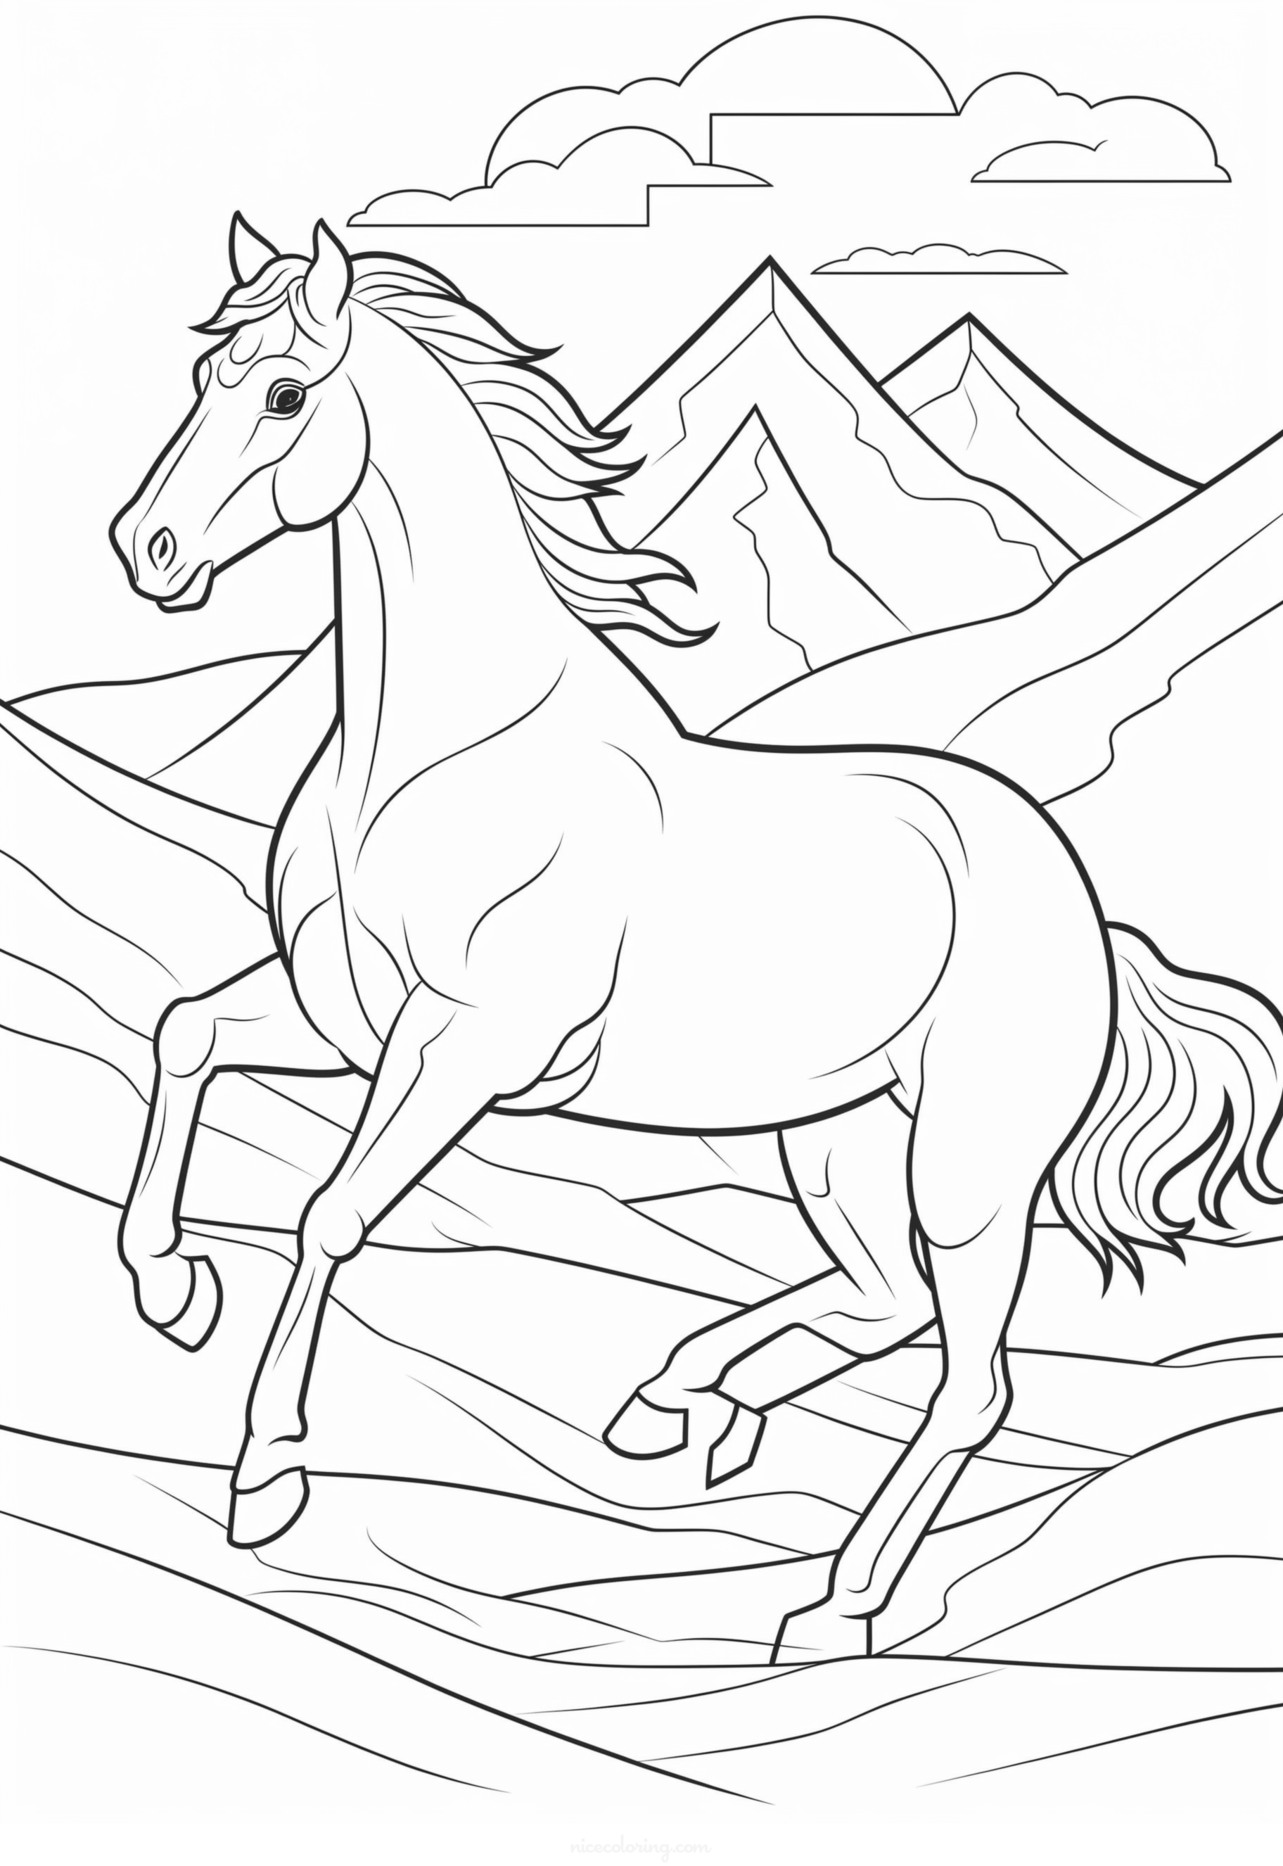 Gambar kuda dengan surai tergerai untuk diwarnai